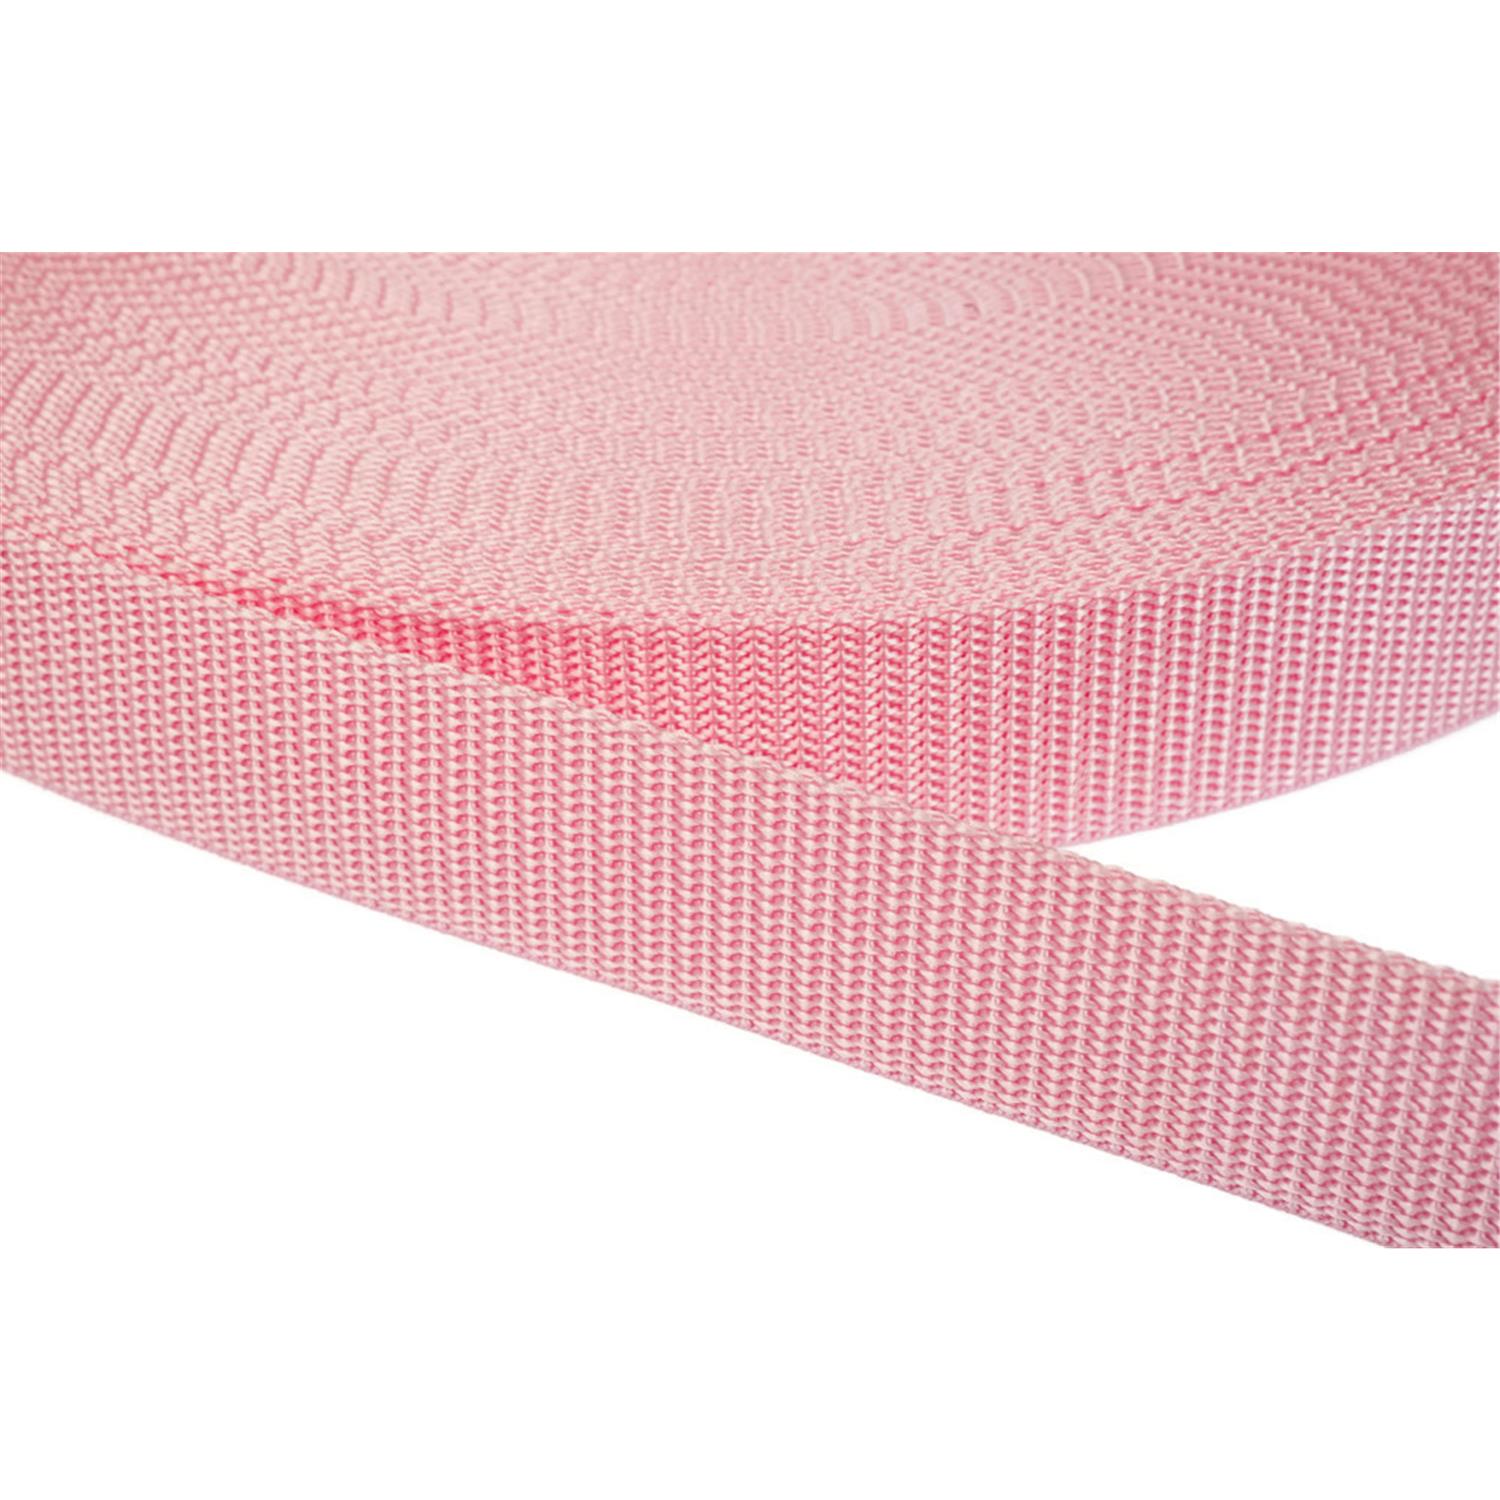 Gurtband 40mm breit aus Polypropylen in 41 Farben 12 - rosa 50 Meter